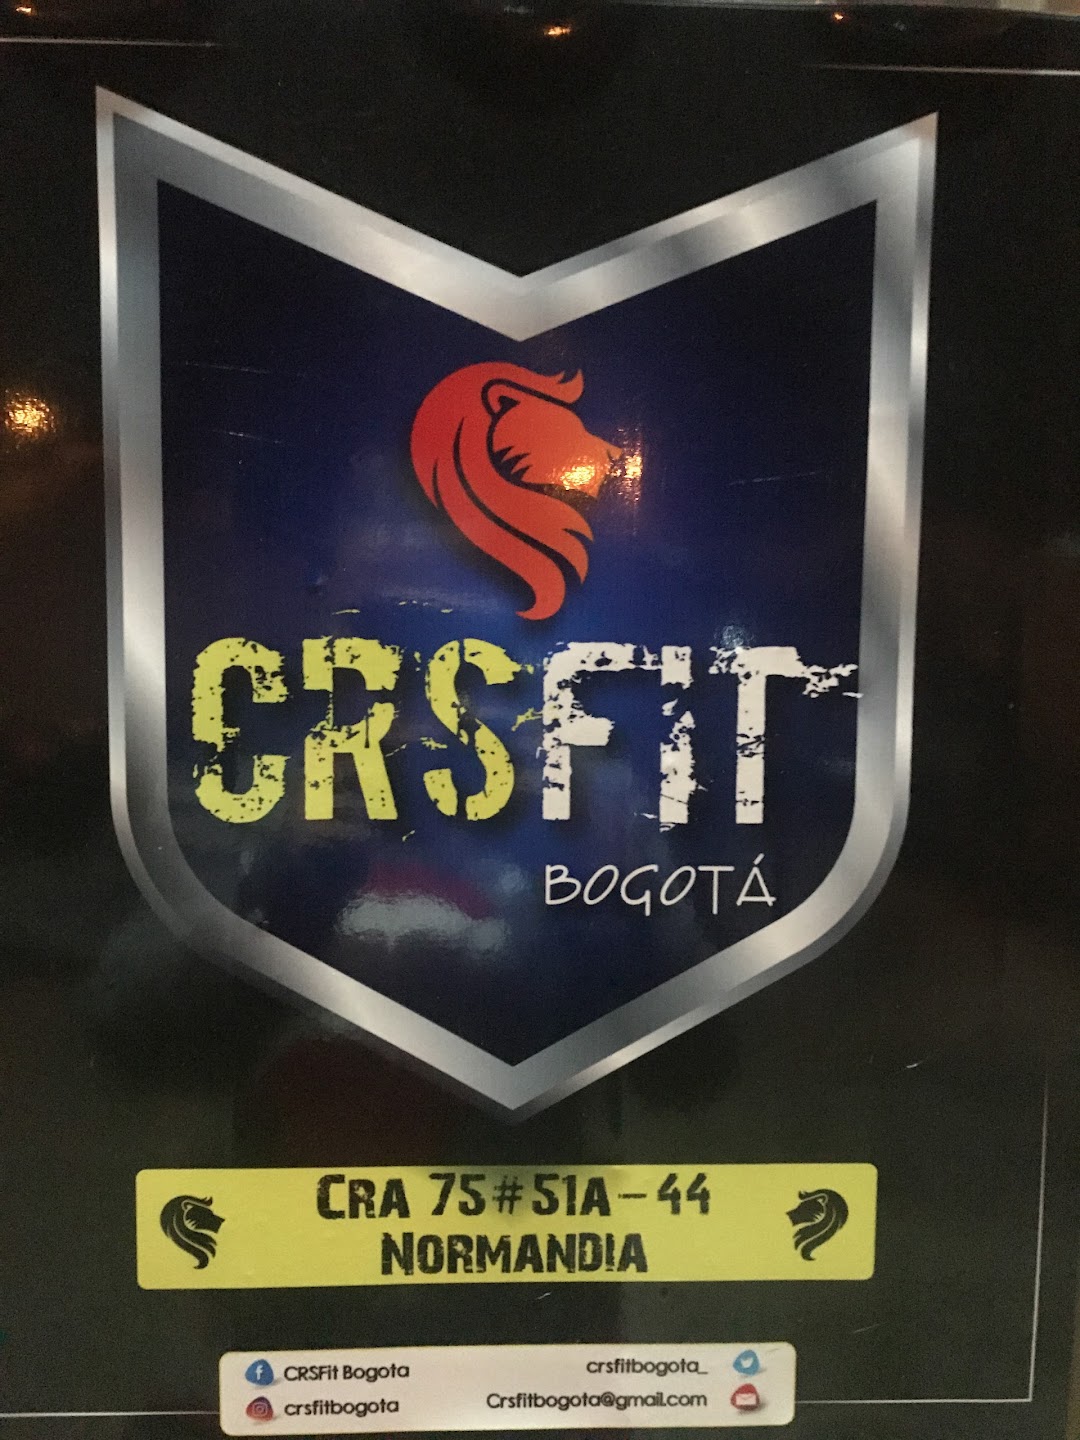 CRSfit Bogotá